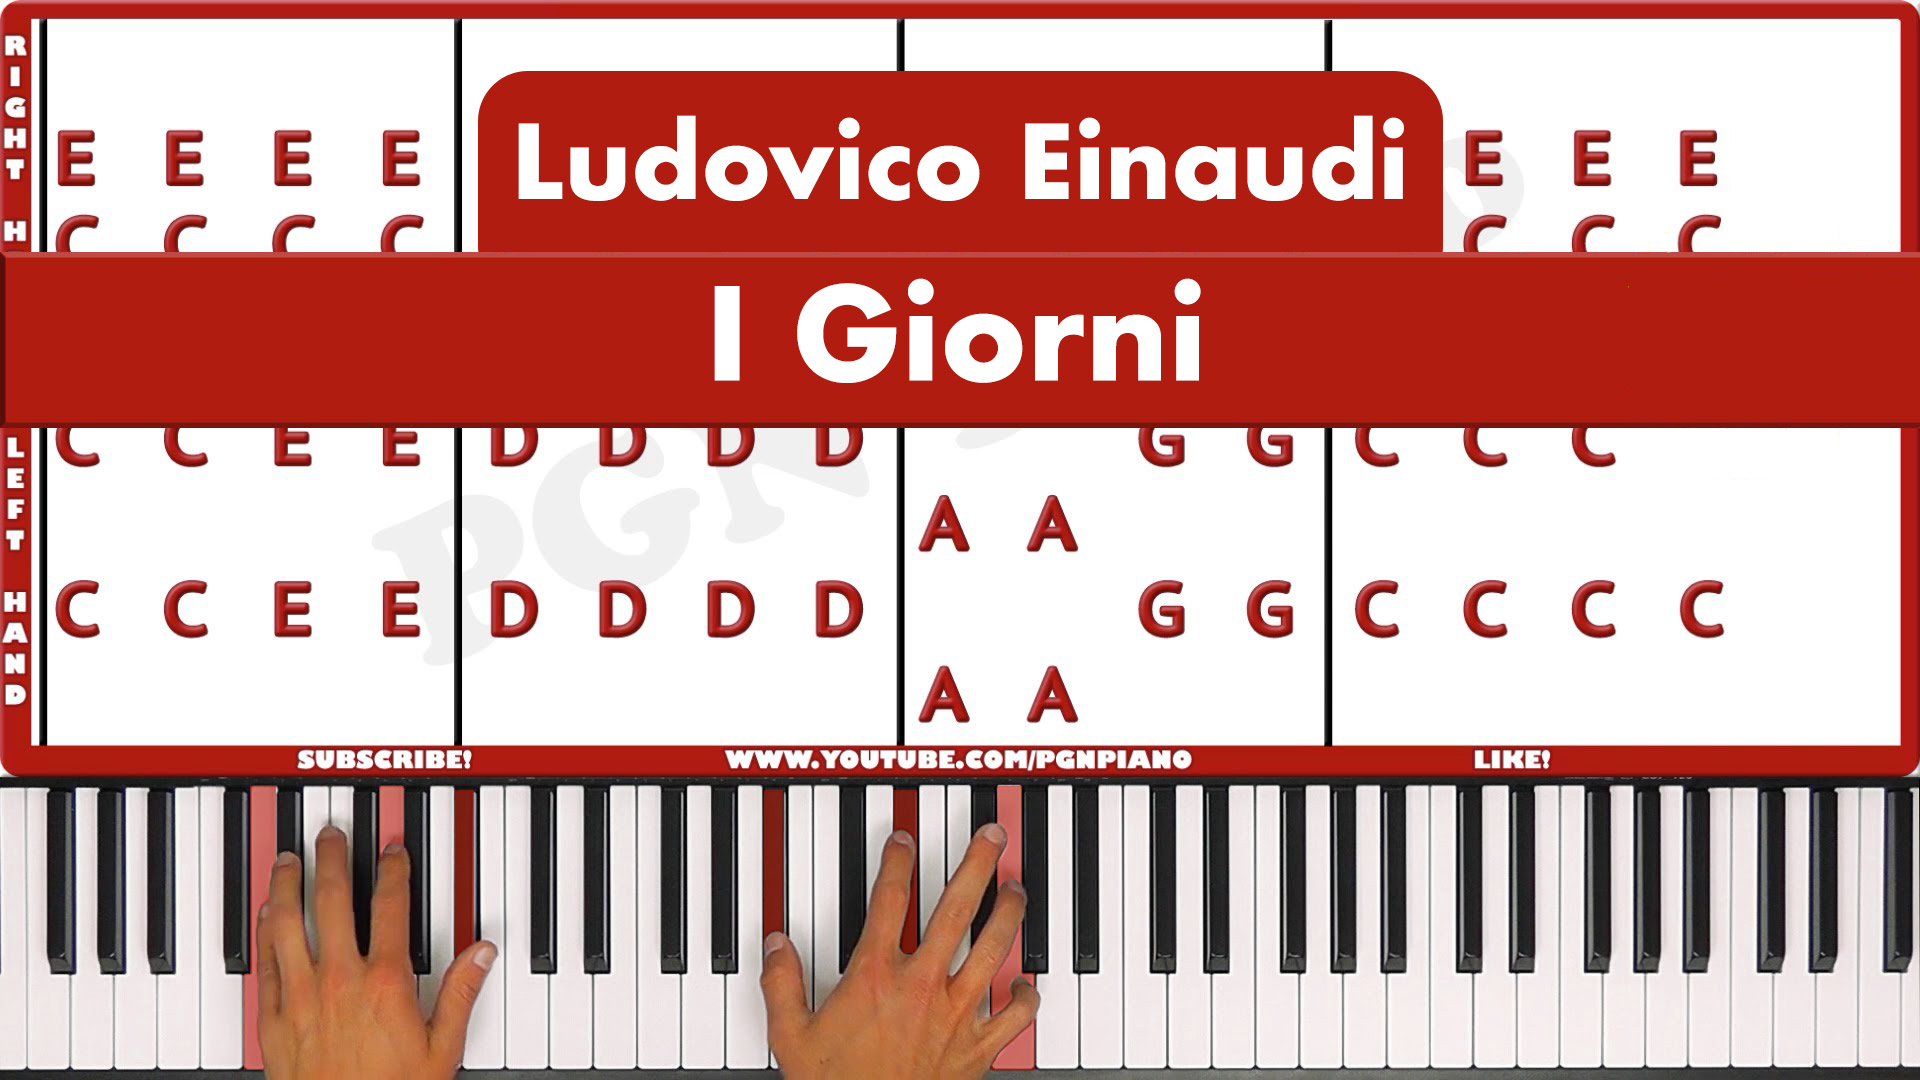 Ludovico Einaudi – I Giorni – Original